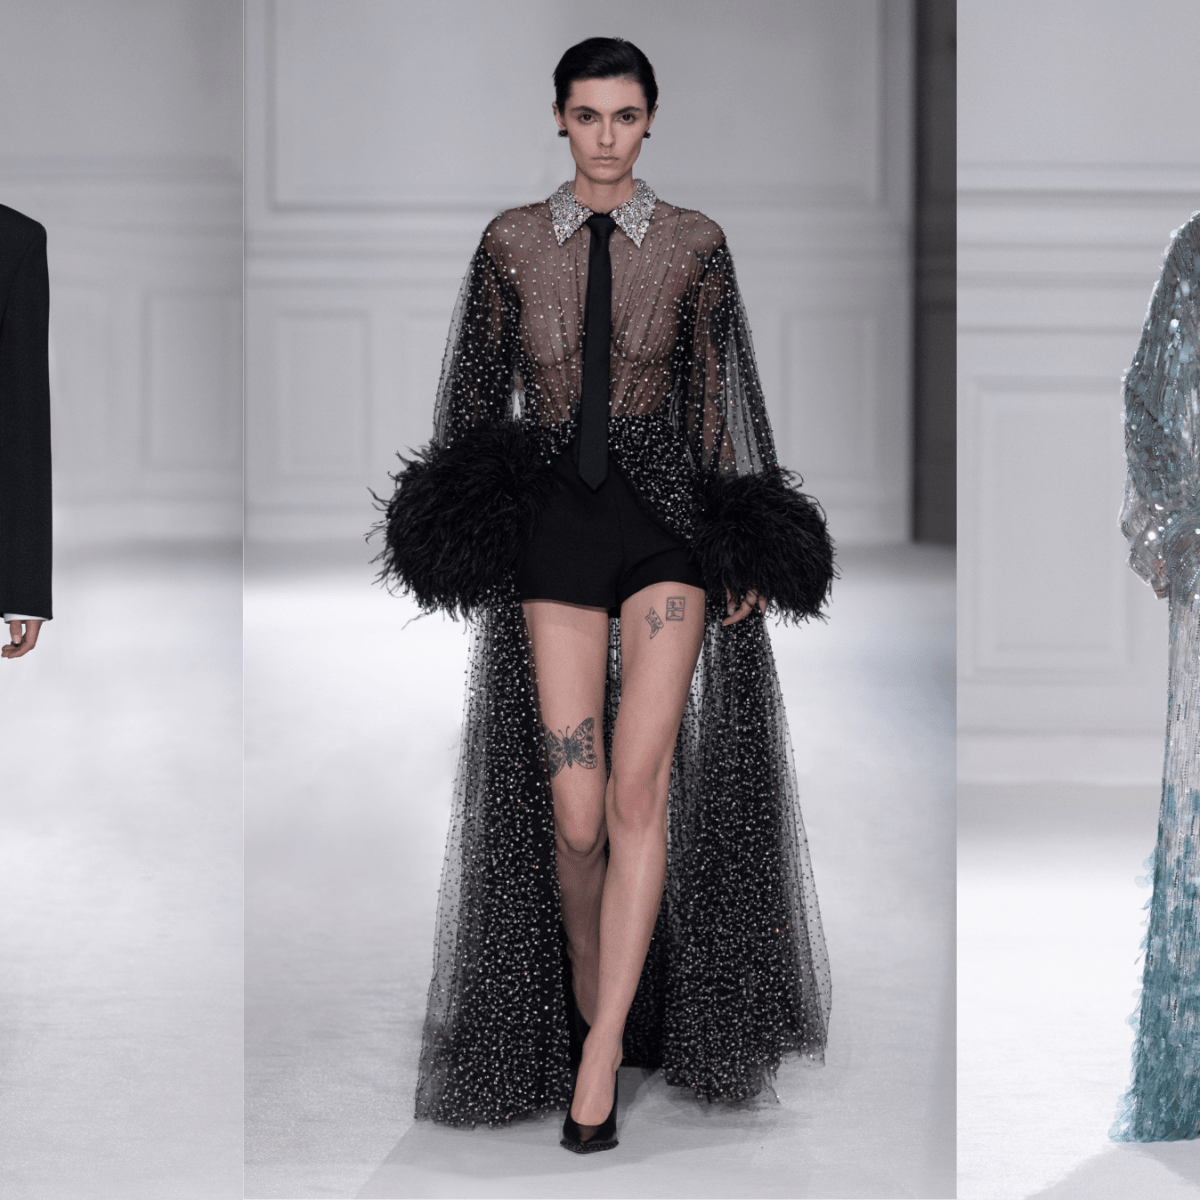 Pierpaolo Piccioli Literal Interpretation of 'Black Tie' Fall 2023 - Fashionista